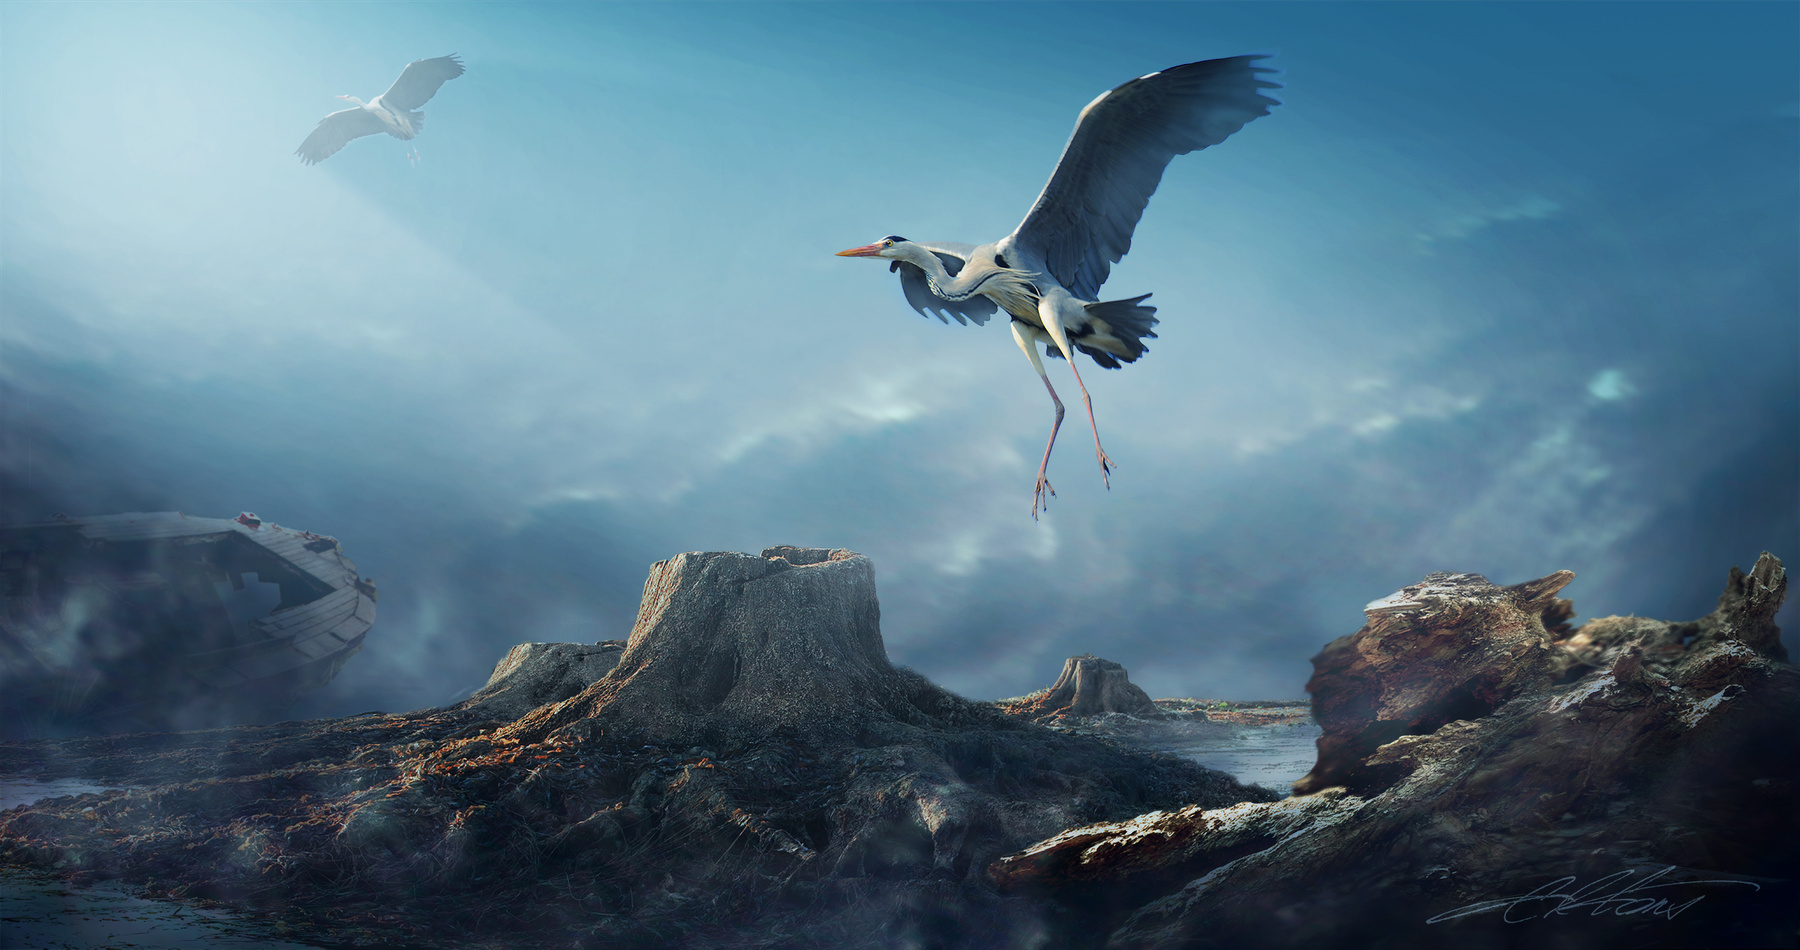 Herons Flight Digital Photo Art Landscape Fatalism Eltons Fantasies